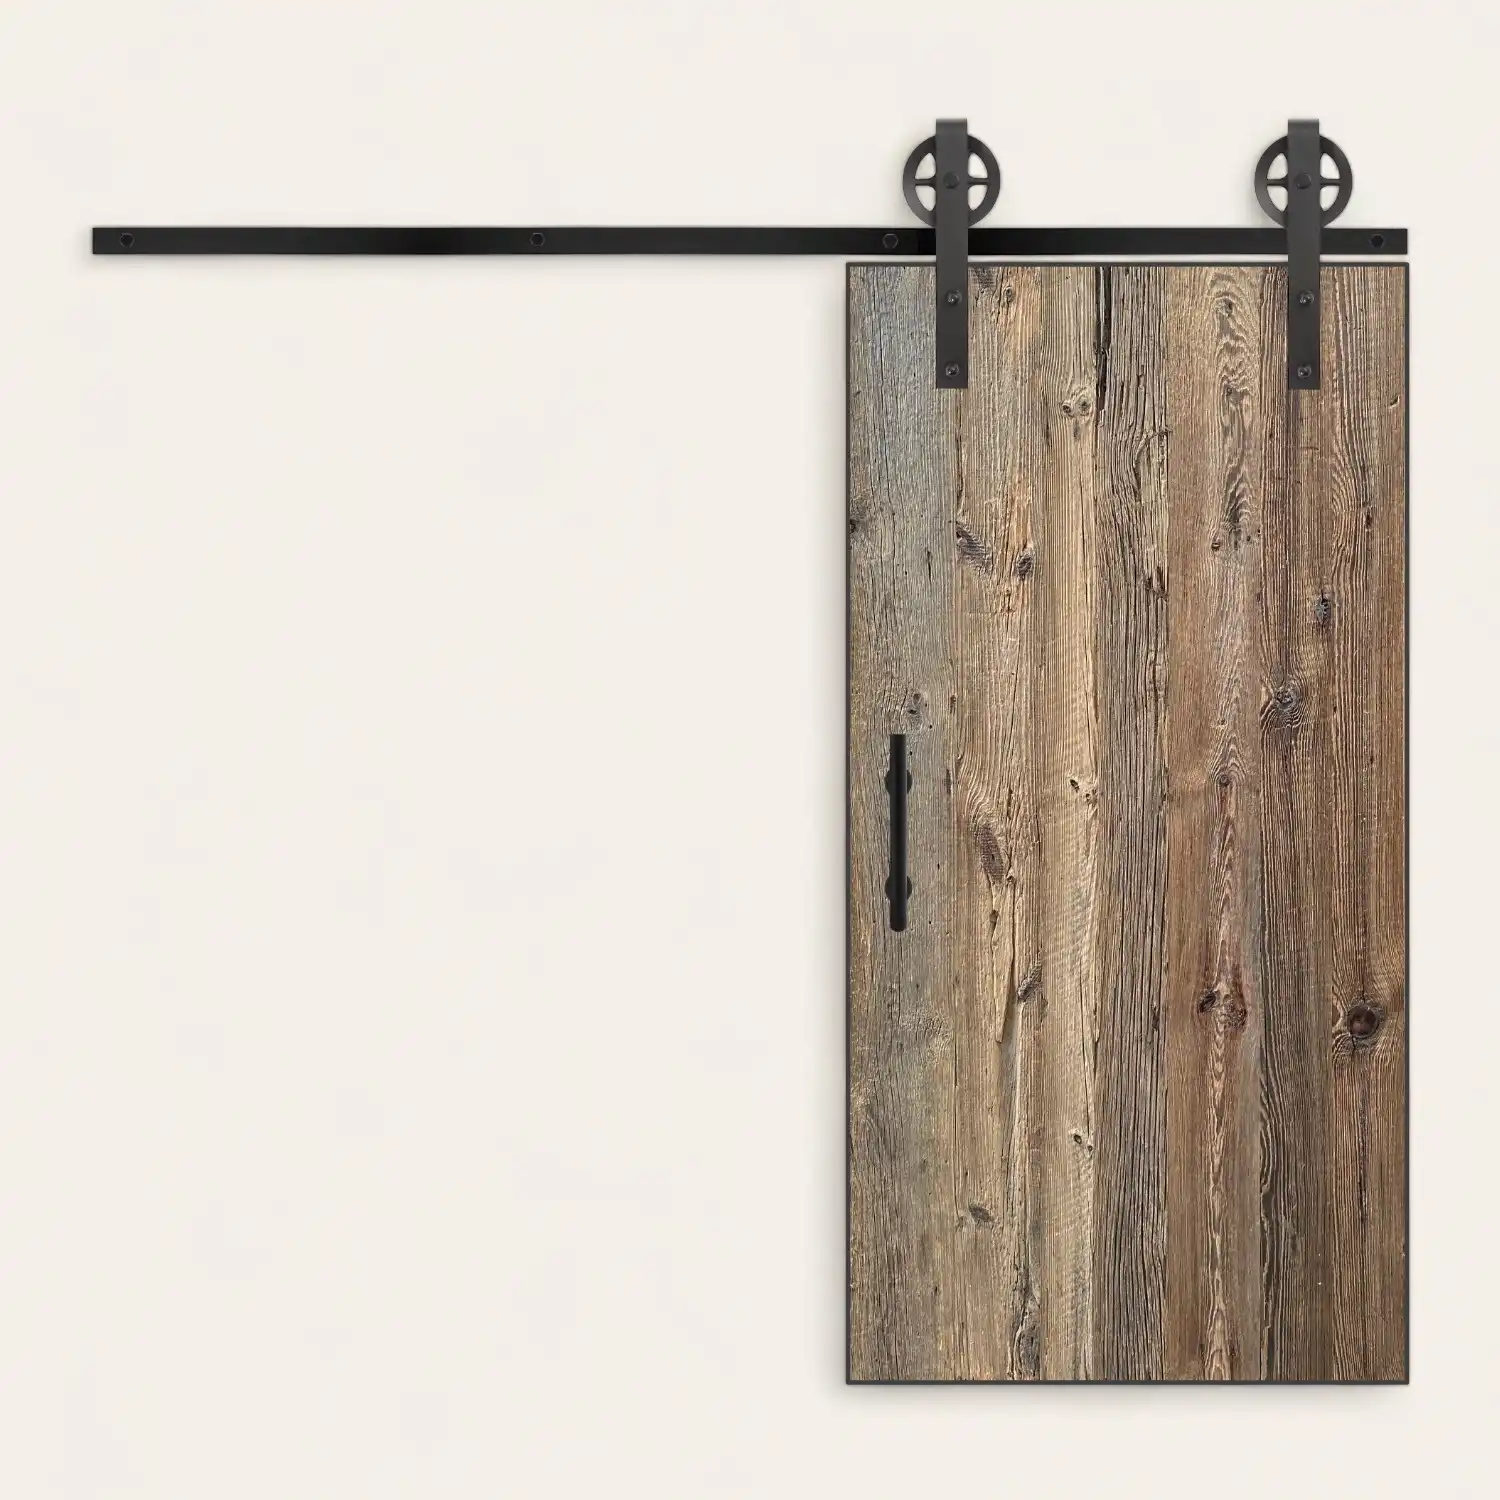  Une porte de grange coulissante avec une finition en bois rustique est montée sur un rail en métal noir contre un mur blanc uni. 